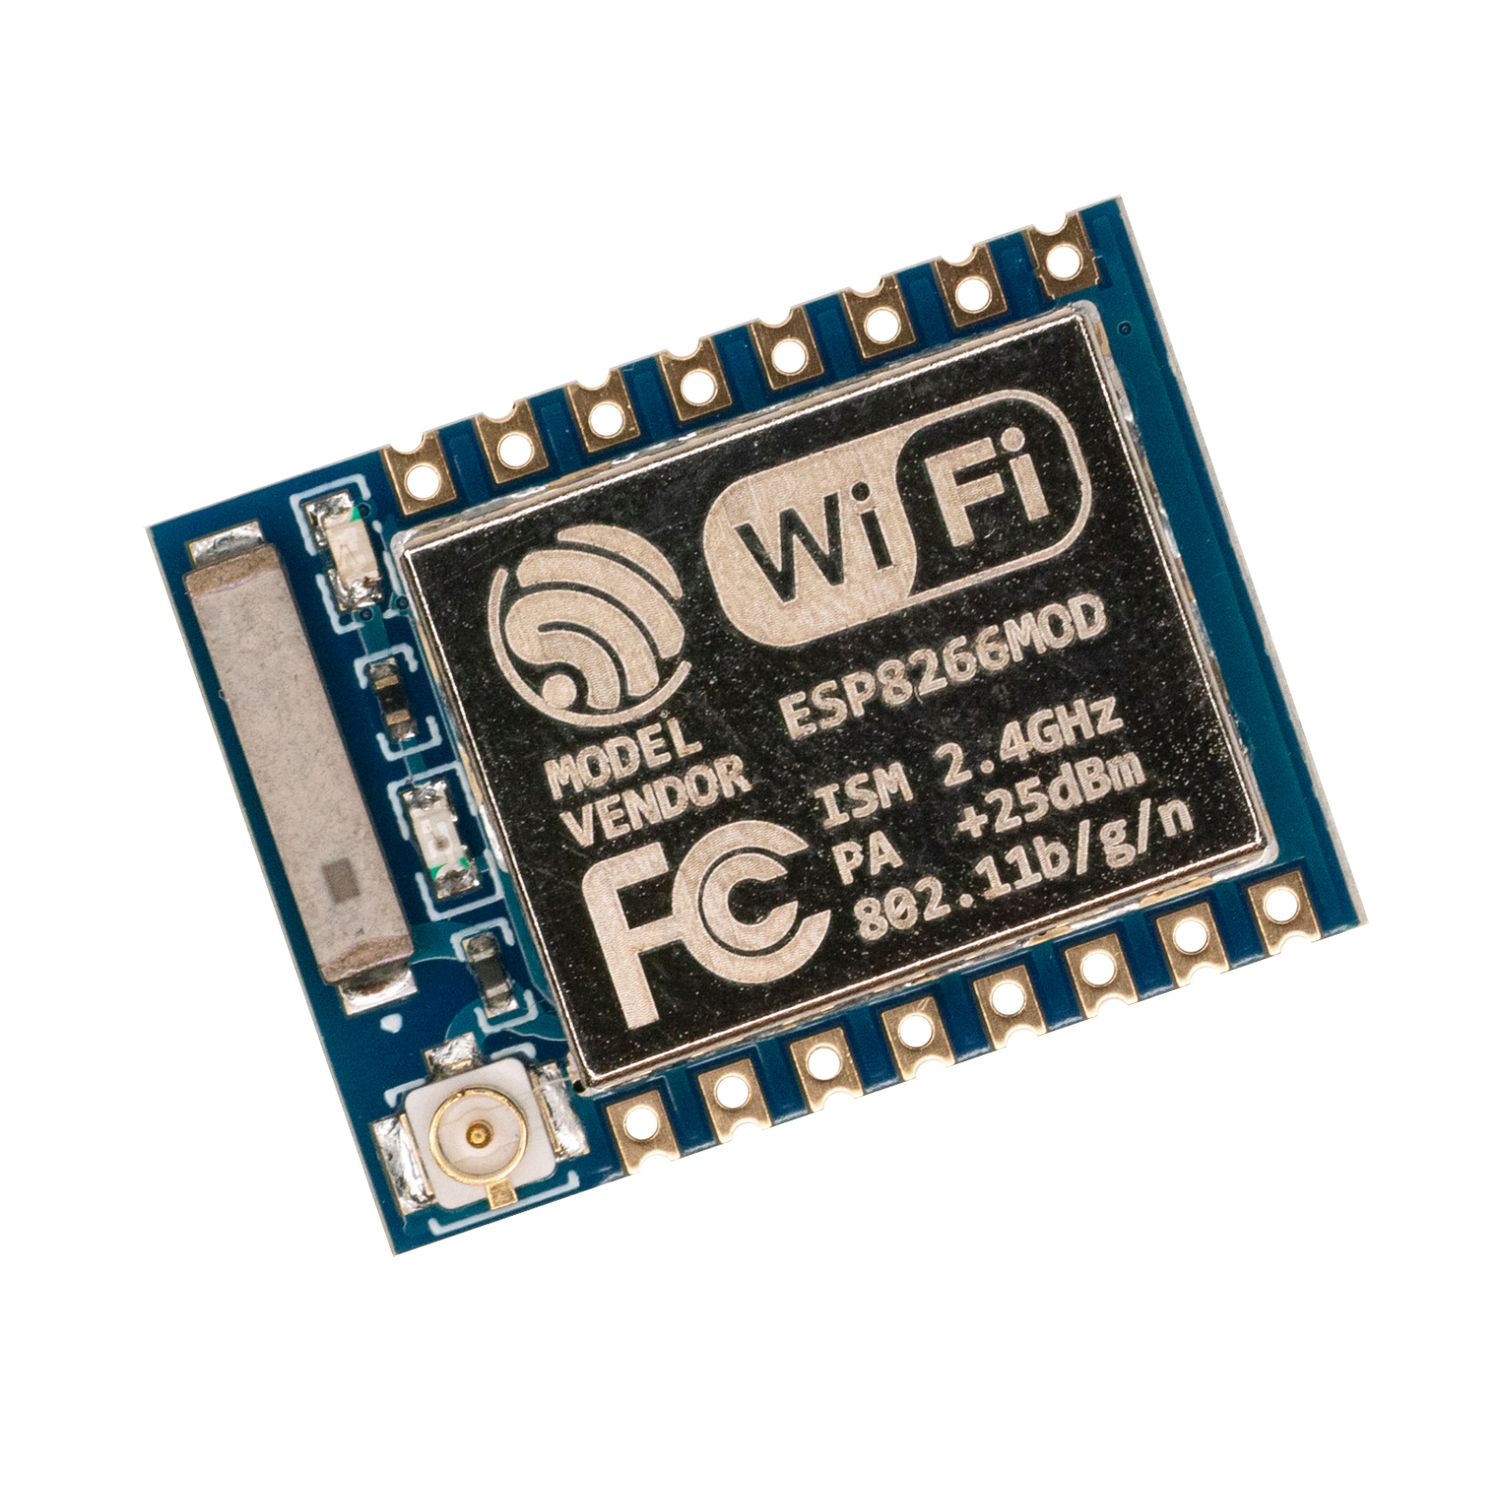 SMD модуль Wi-Fi ESP8266 версия ESP-07